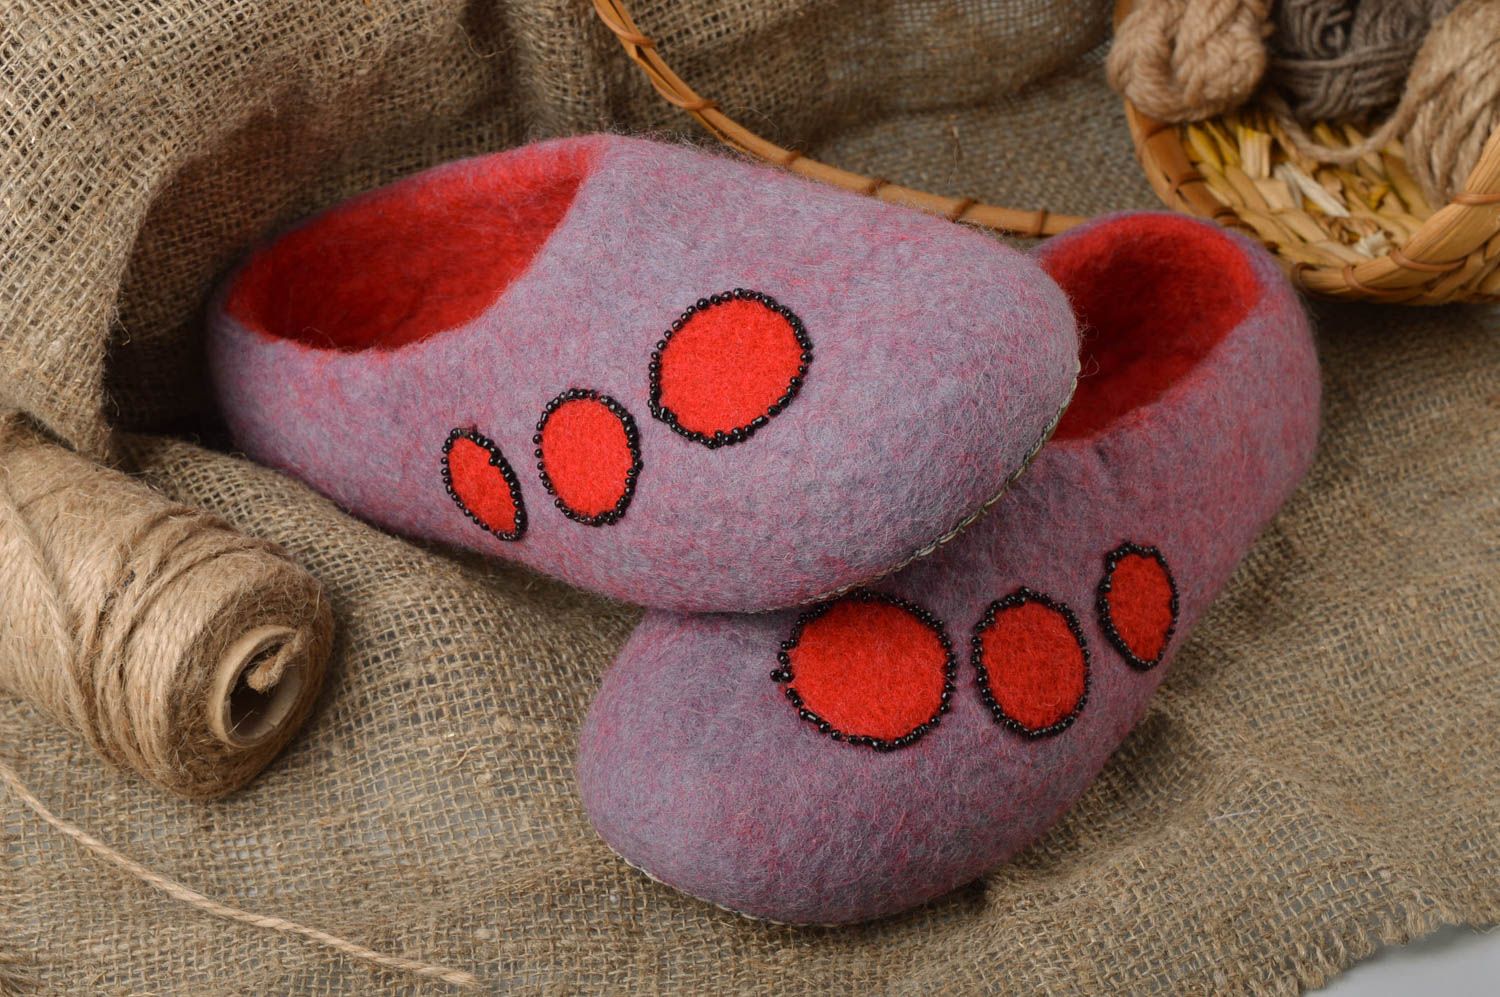 Zapatillas de casa originales en técnica de fieltro de lana natural moradas foto 1